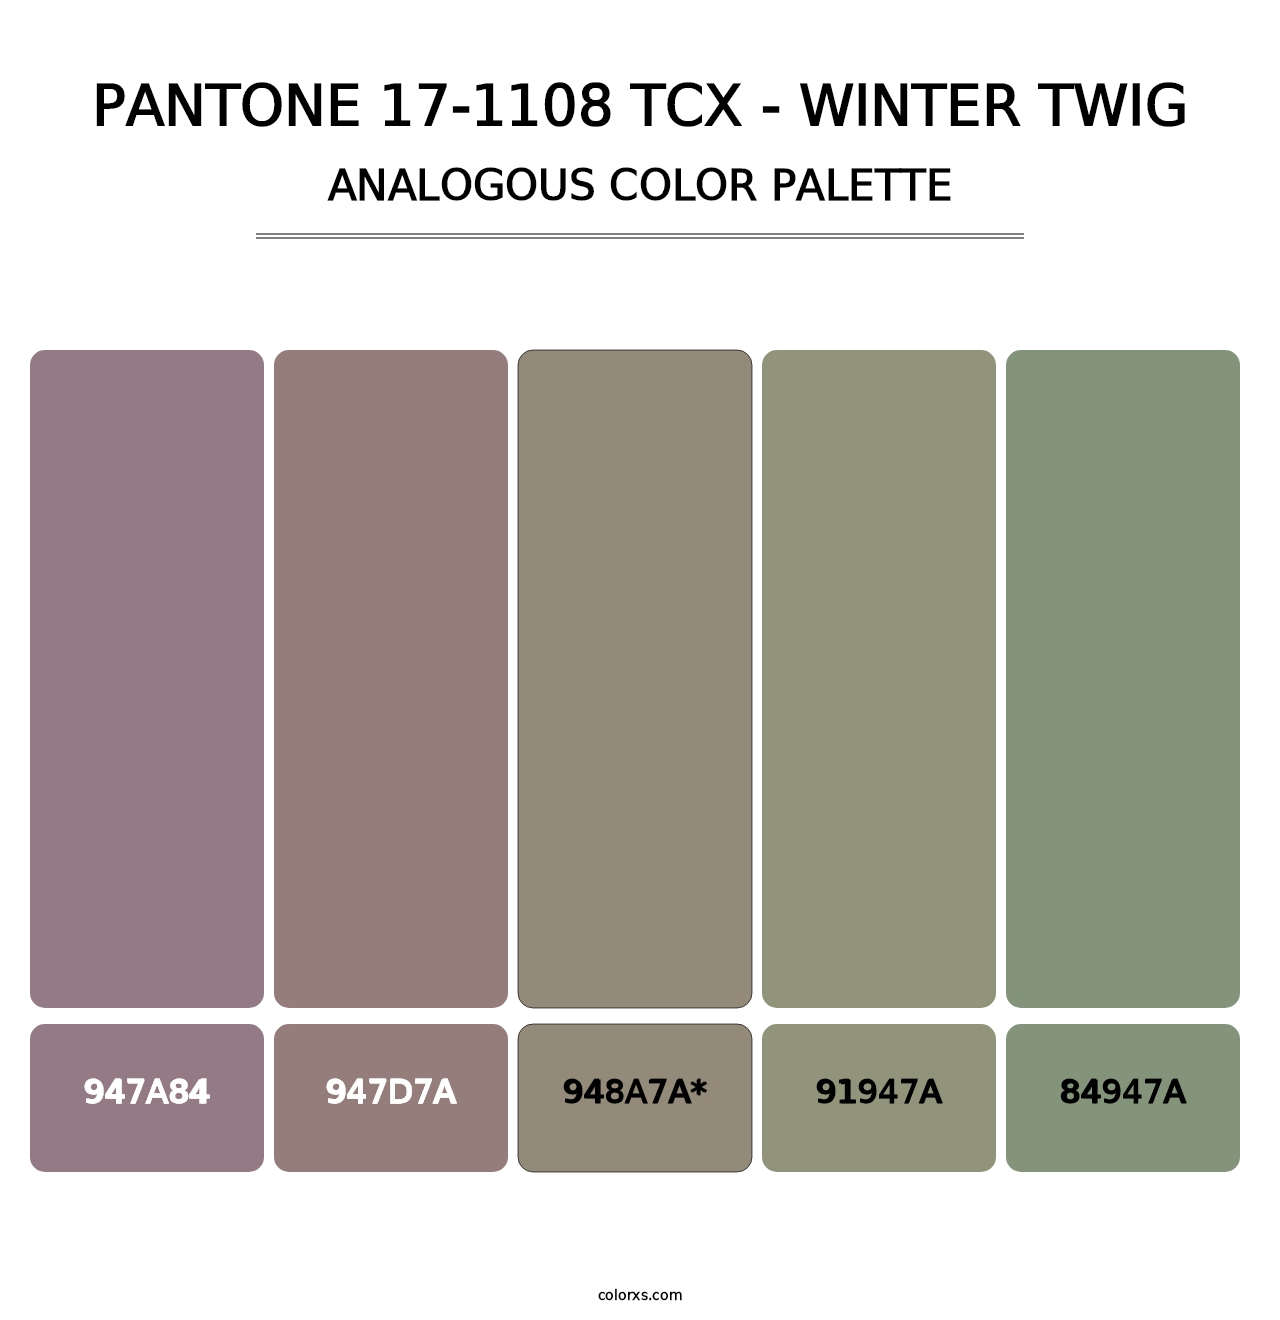 PANTONE 17-1108 TCX - Winter Twig - Analogous Color Palette